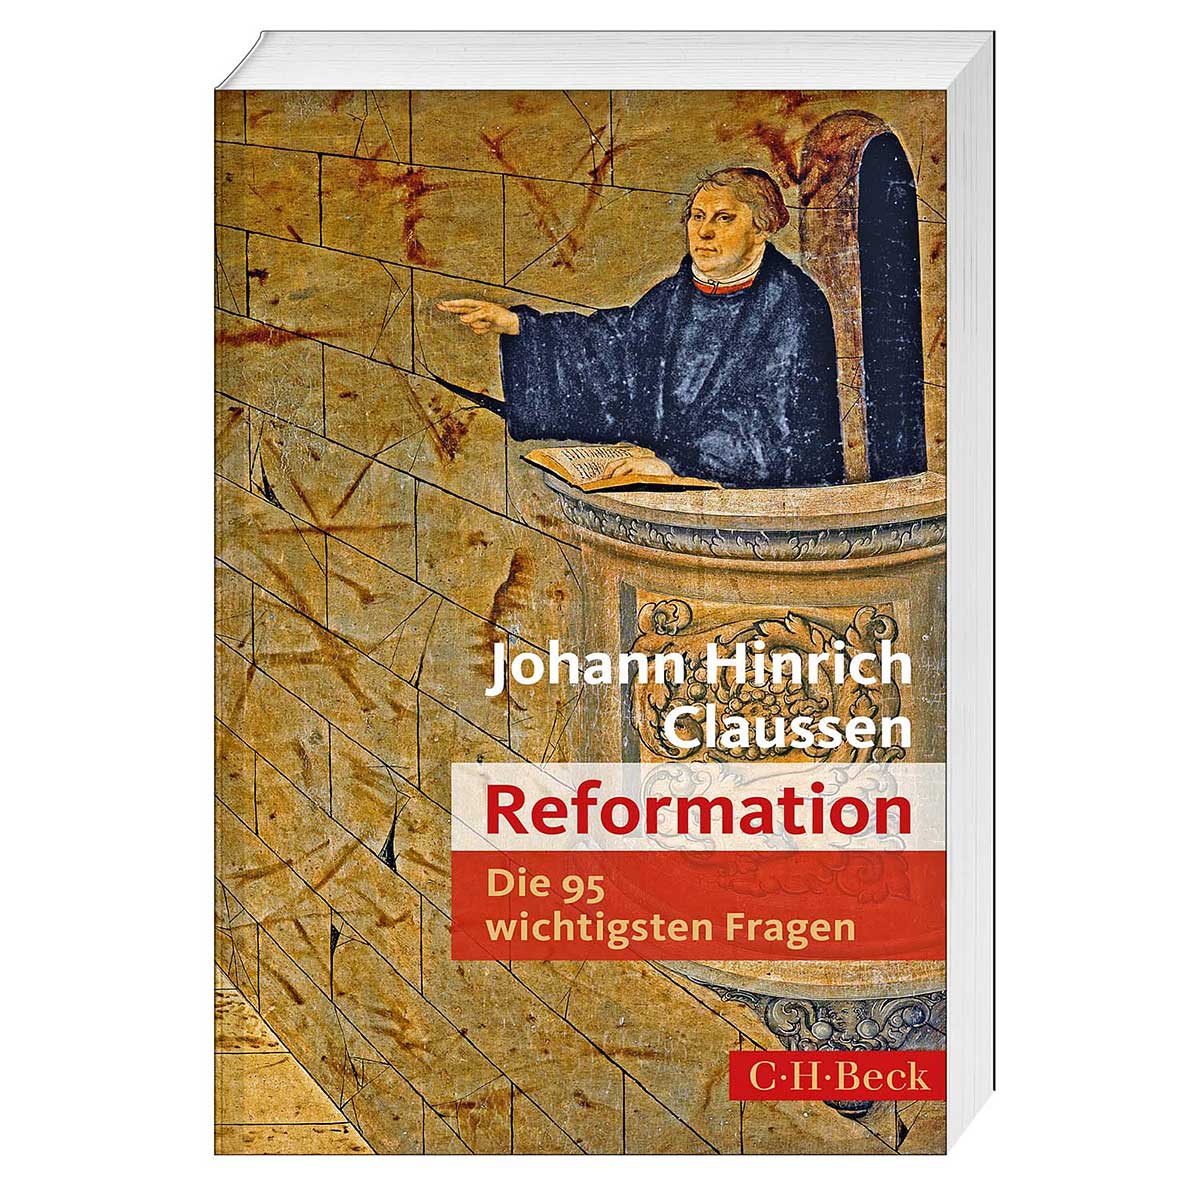 Reformation von C.H.Beck